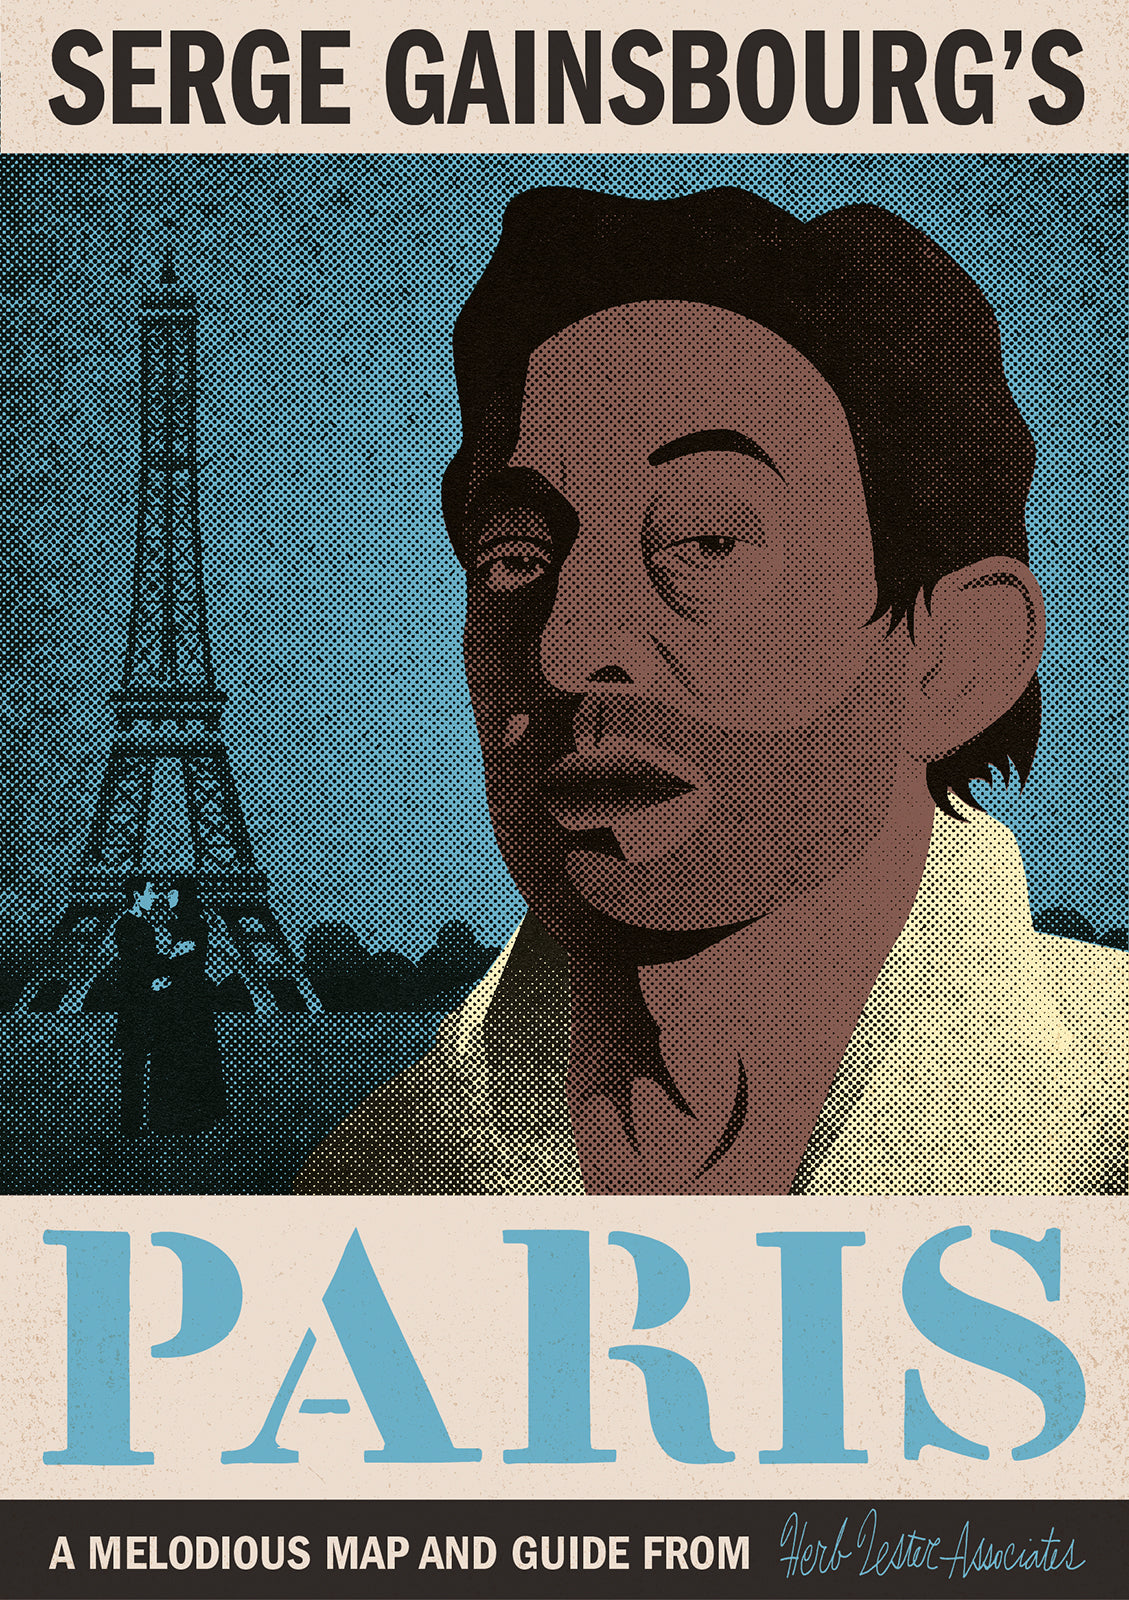 Serge Gainsbourg's Paris